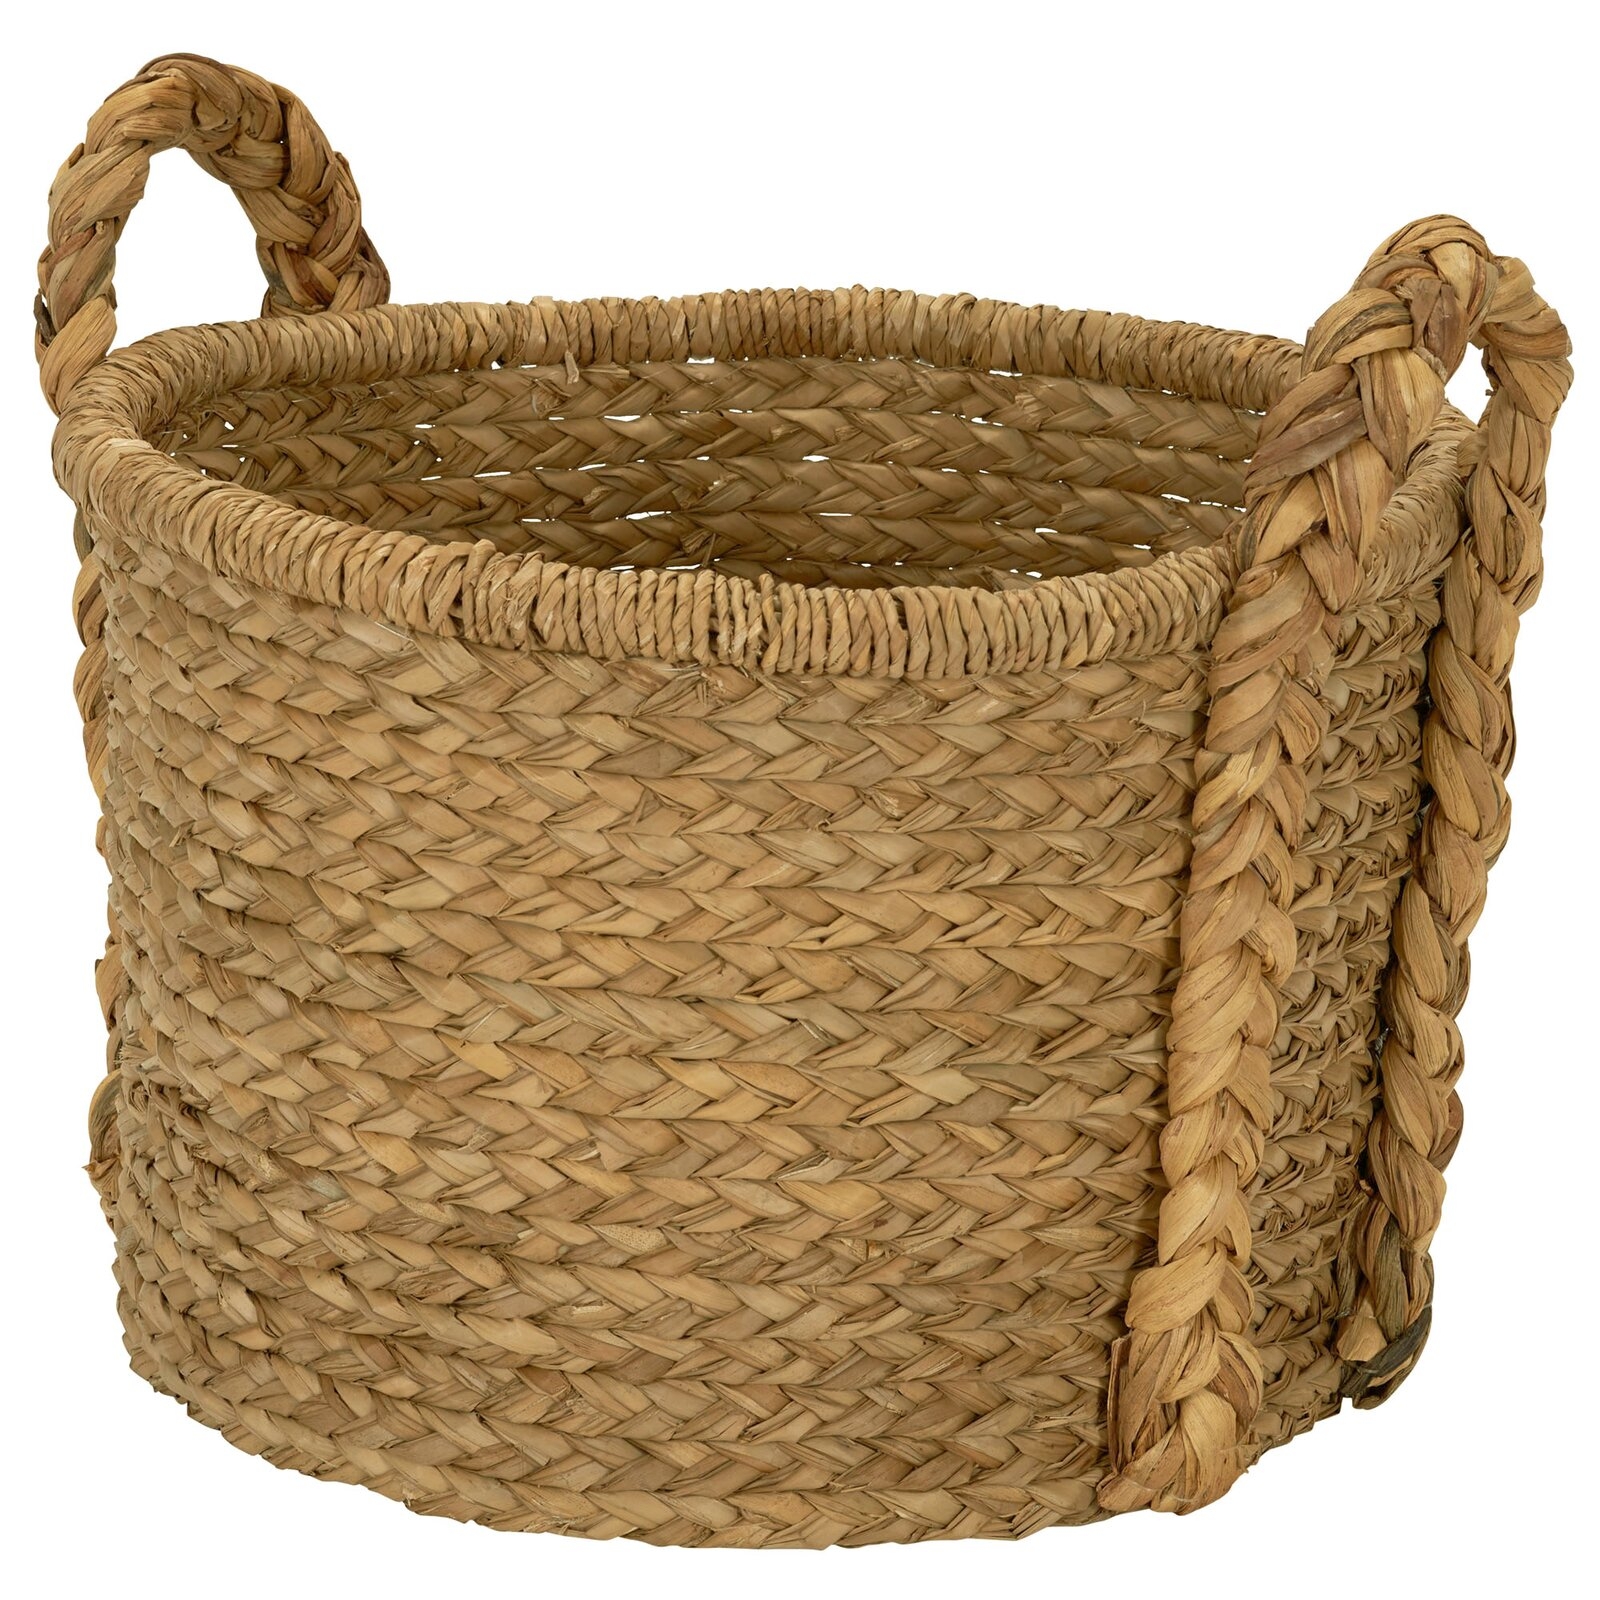 Floor Wicker Basket In Stock 6/24 - Image 1